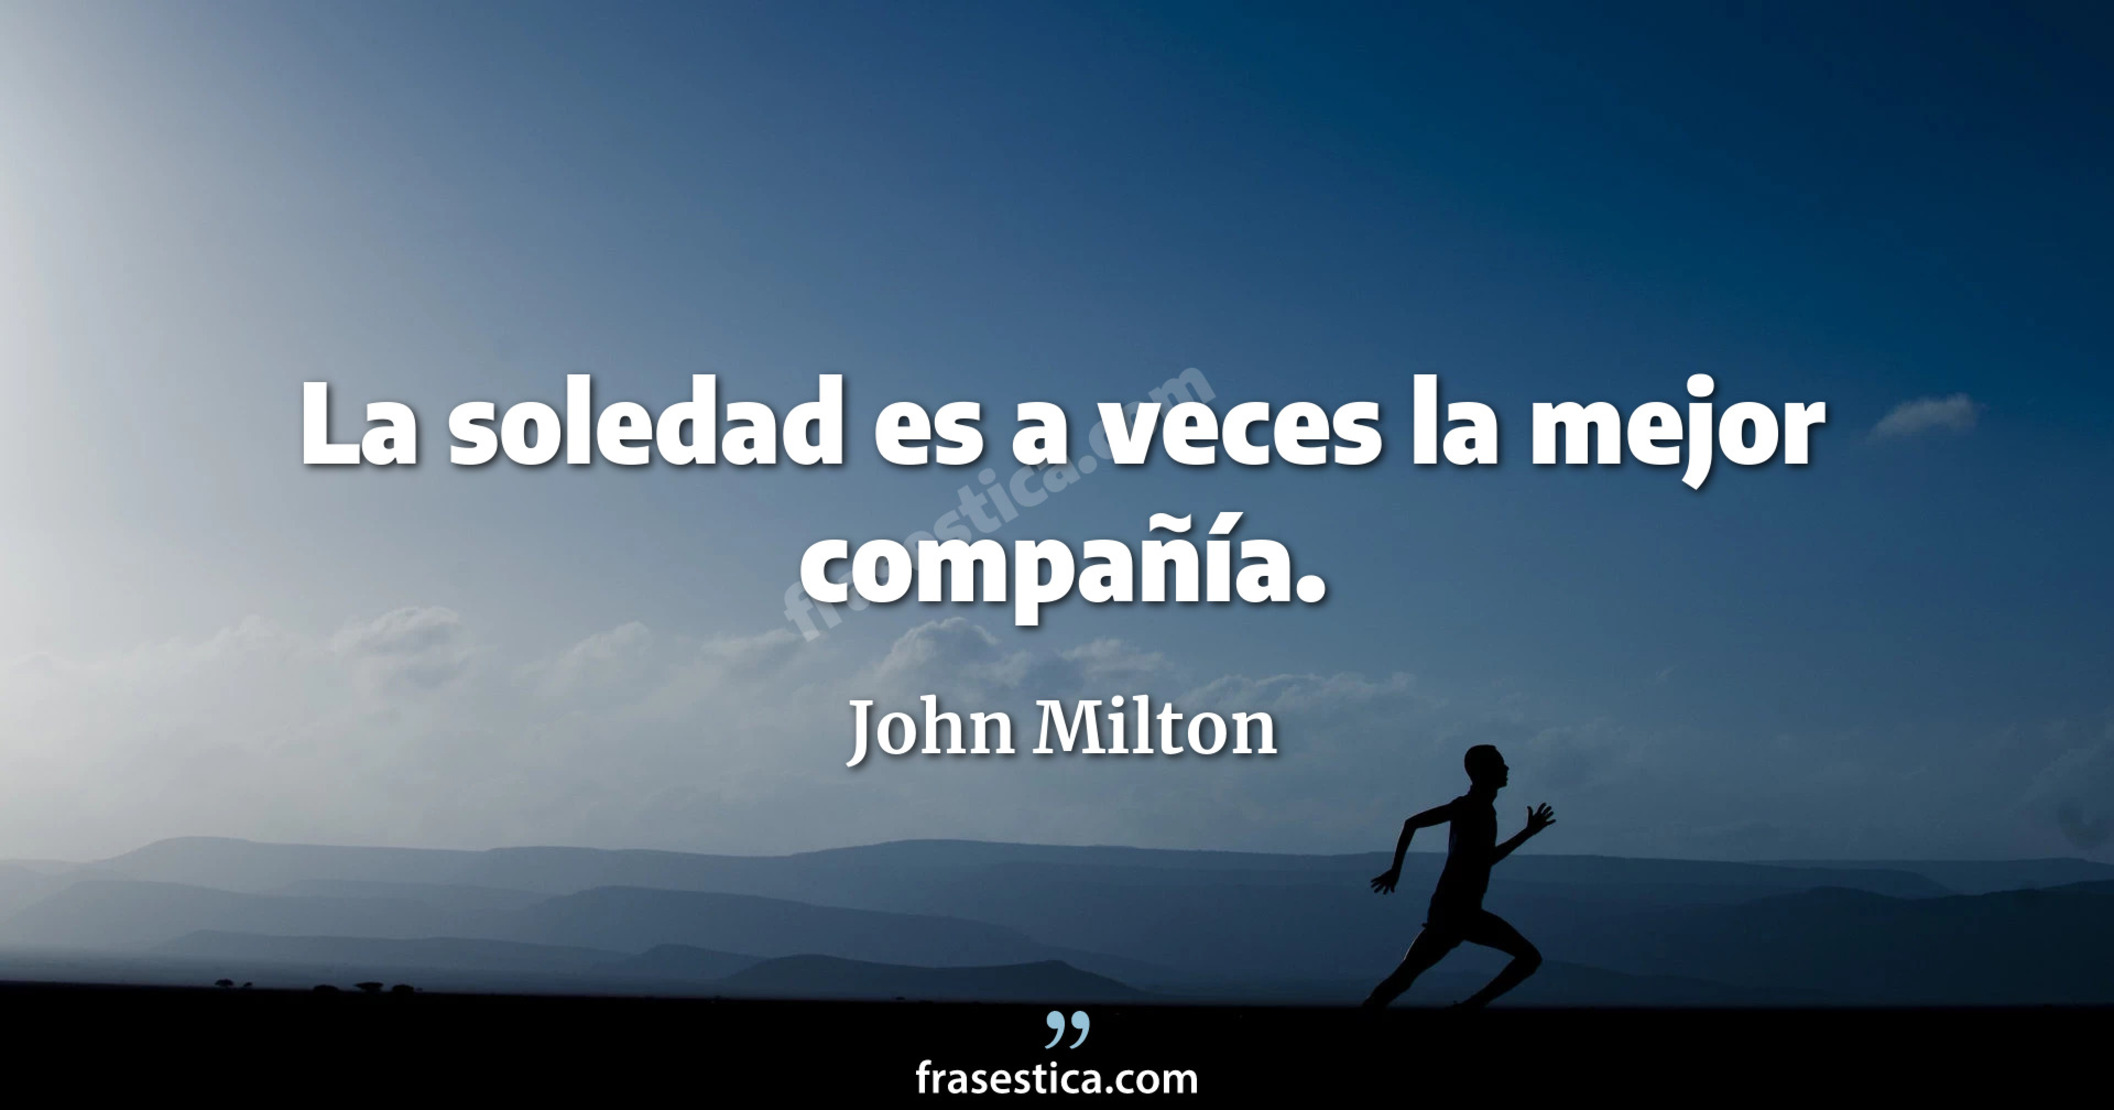 La soledad es a veces la mejor compañía. - John Milton